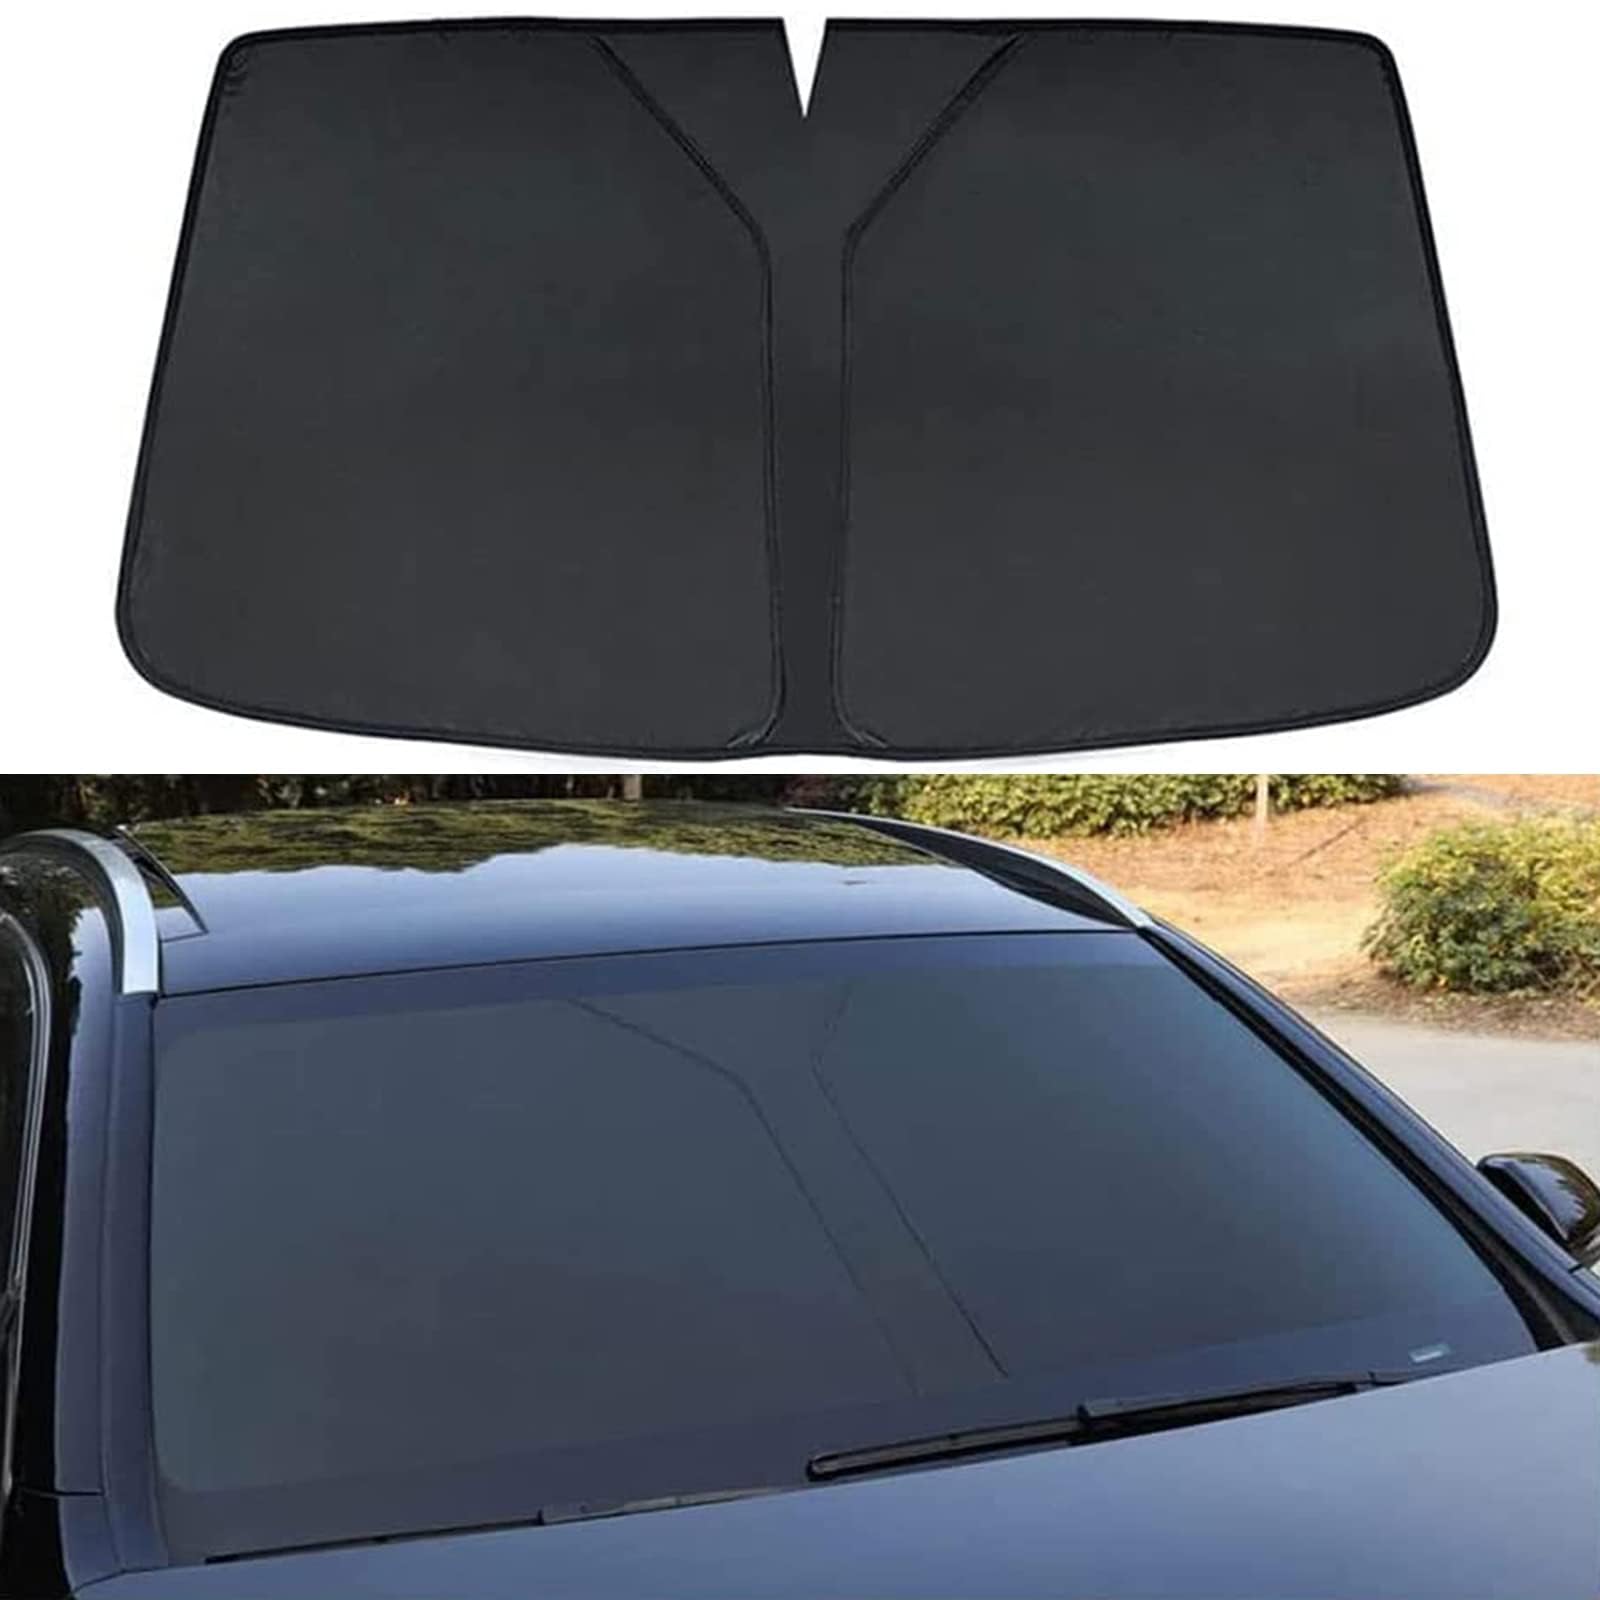 Auto Windschutzscheibe Sonnenschutz für Vw T-roc,Verdunkelung Faltbar und Tragbar Wärmeisolierung Windschutzscheiben-Innenzubehör,Black von MUGONGWEI